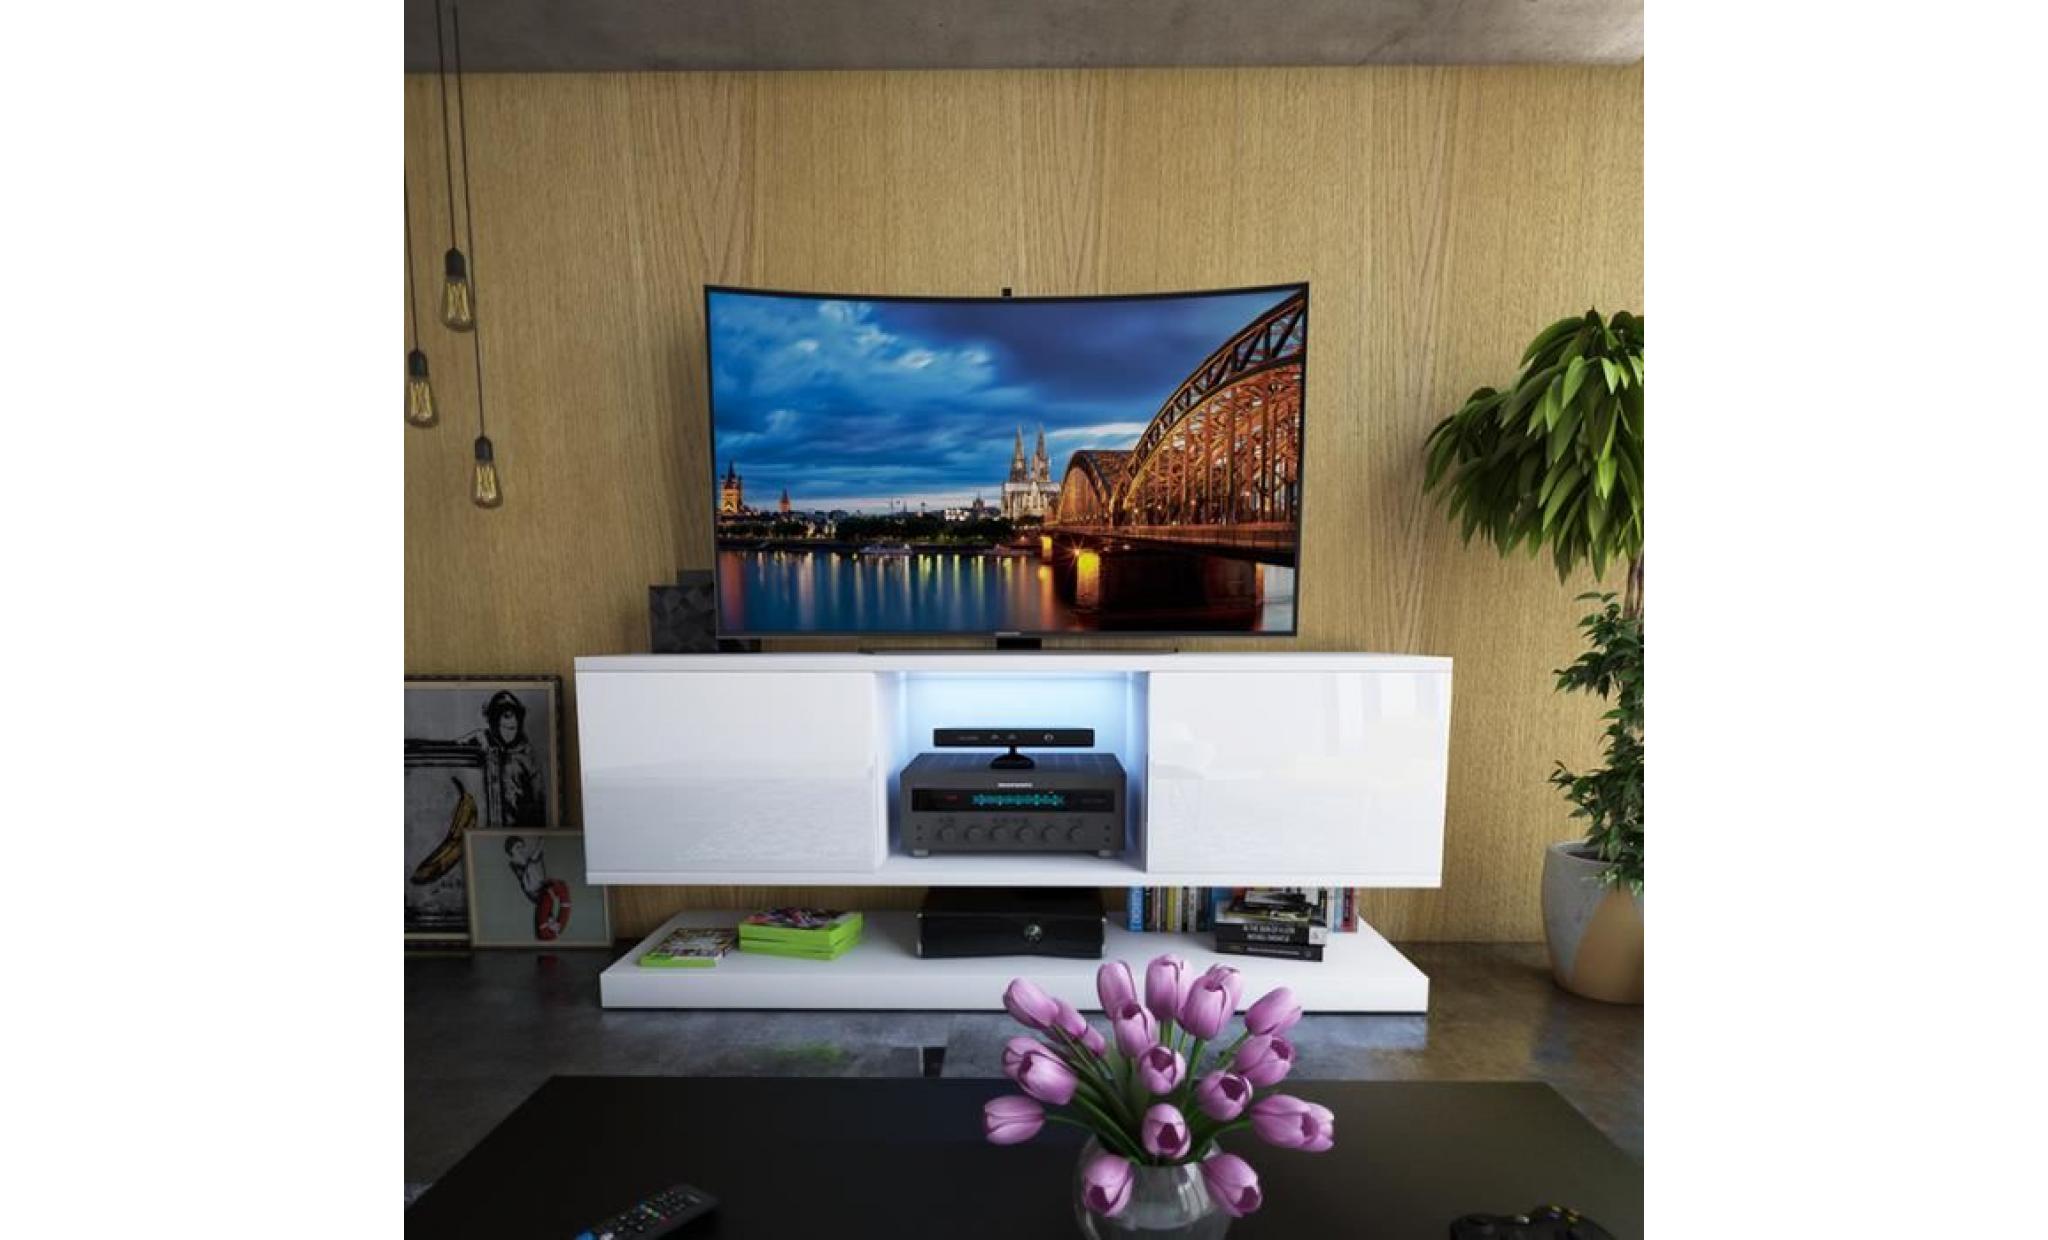 meuble tv / meuble salon wizz   140 cm   blanc mat / blanc brillan   avec led   style moderne   meuble tv suspendu pas cher